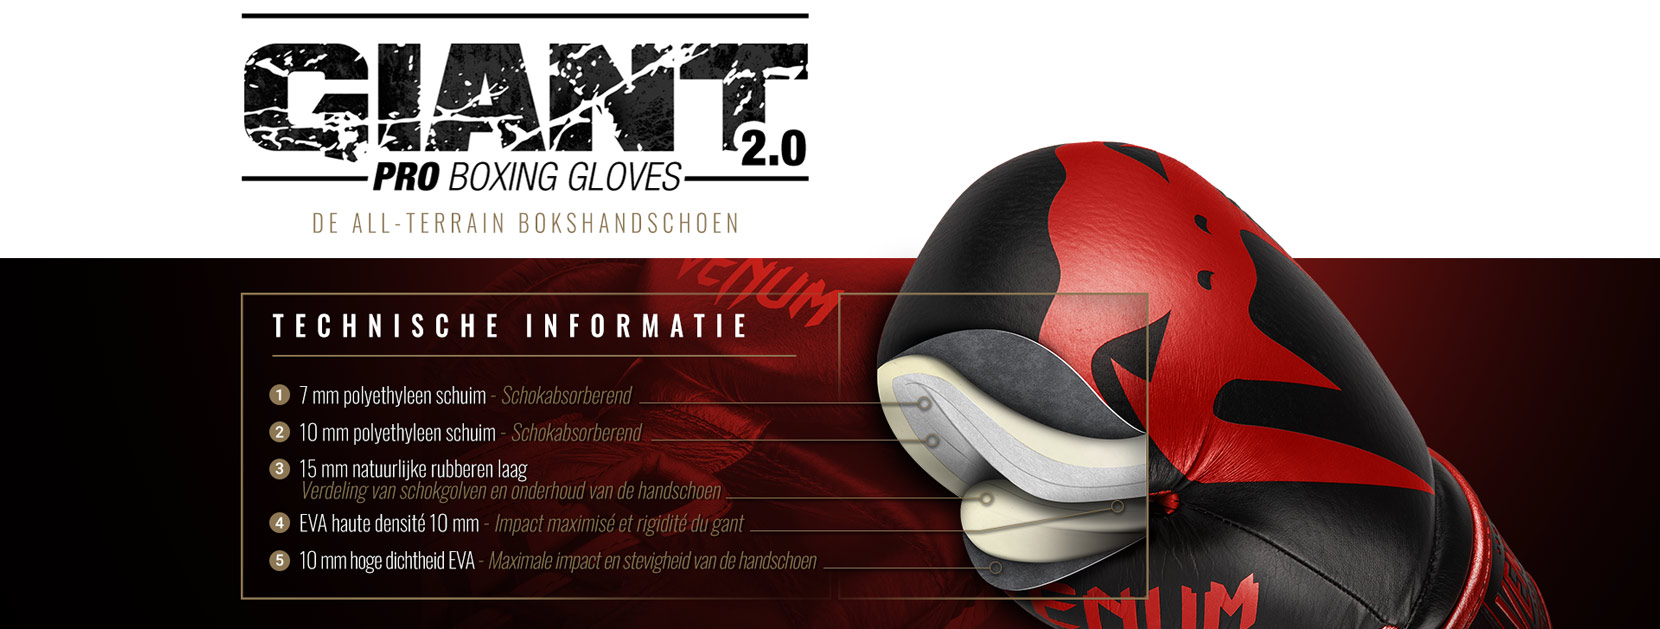 Giant 2.0 professionele bokshandschoenen